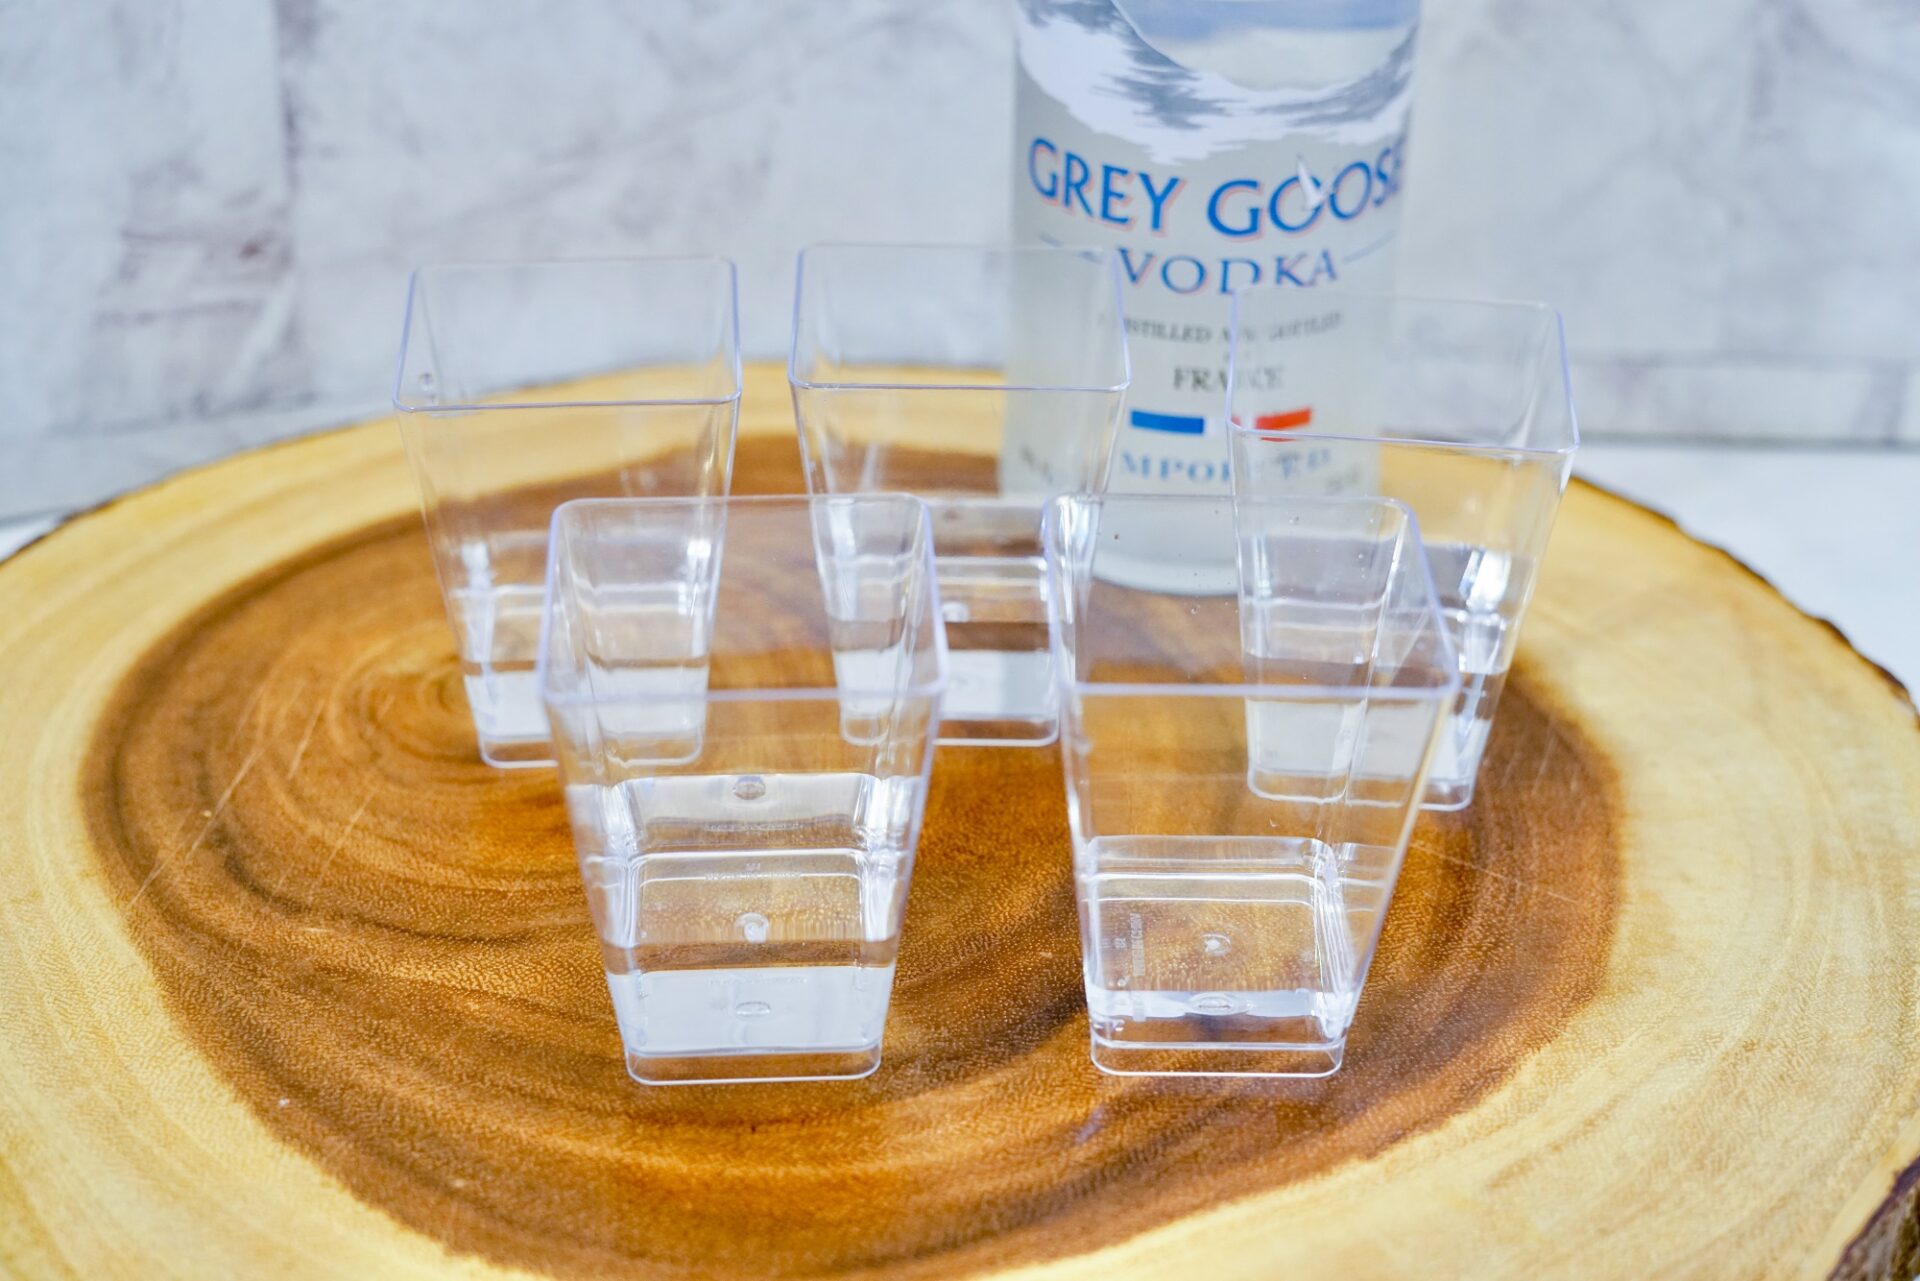 Add vodka to plastic shot glasses.